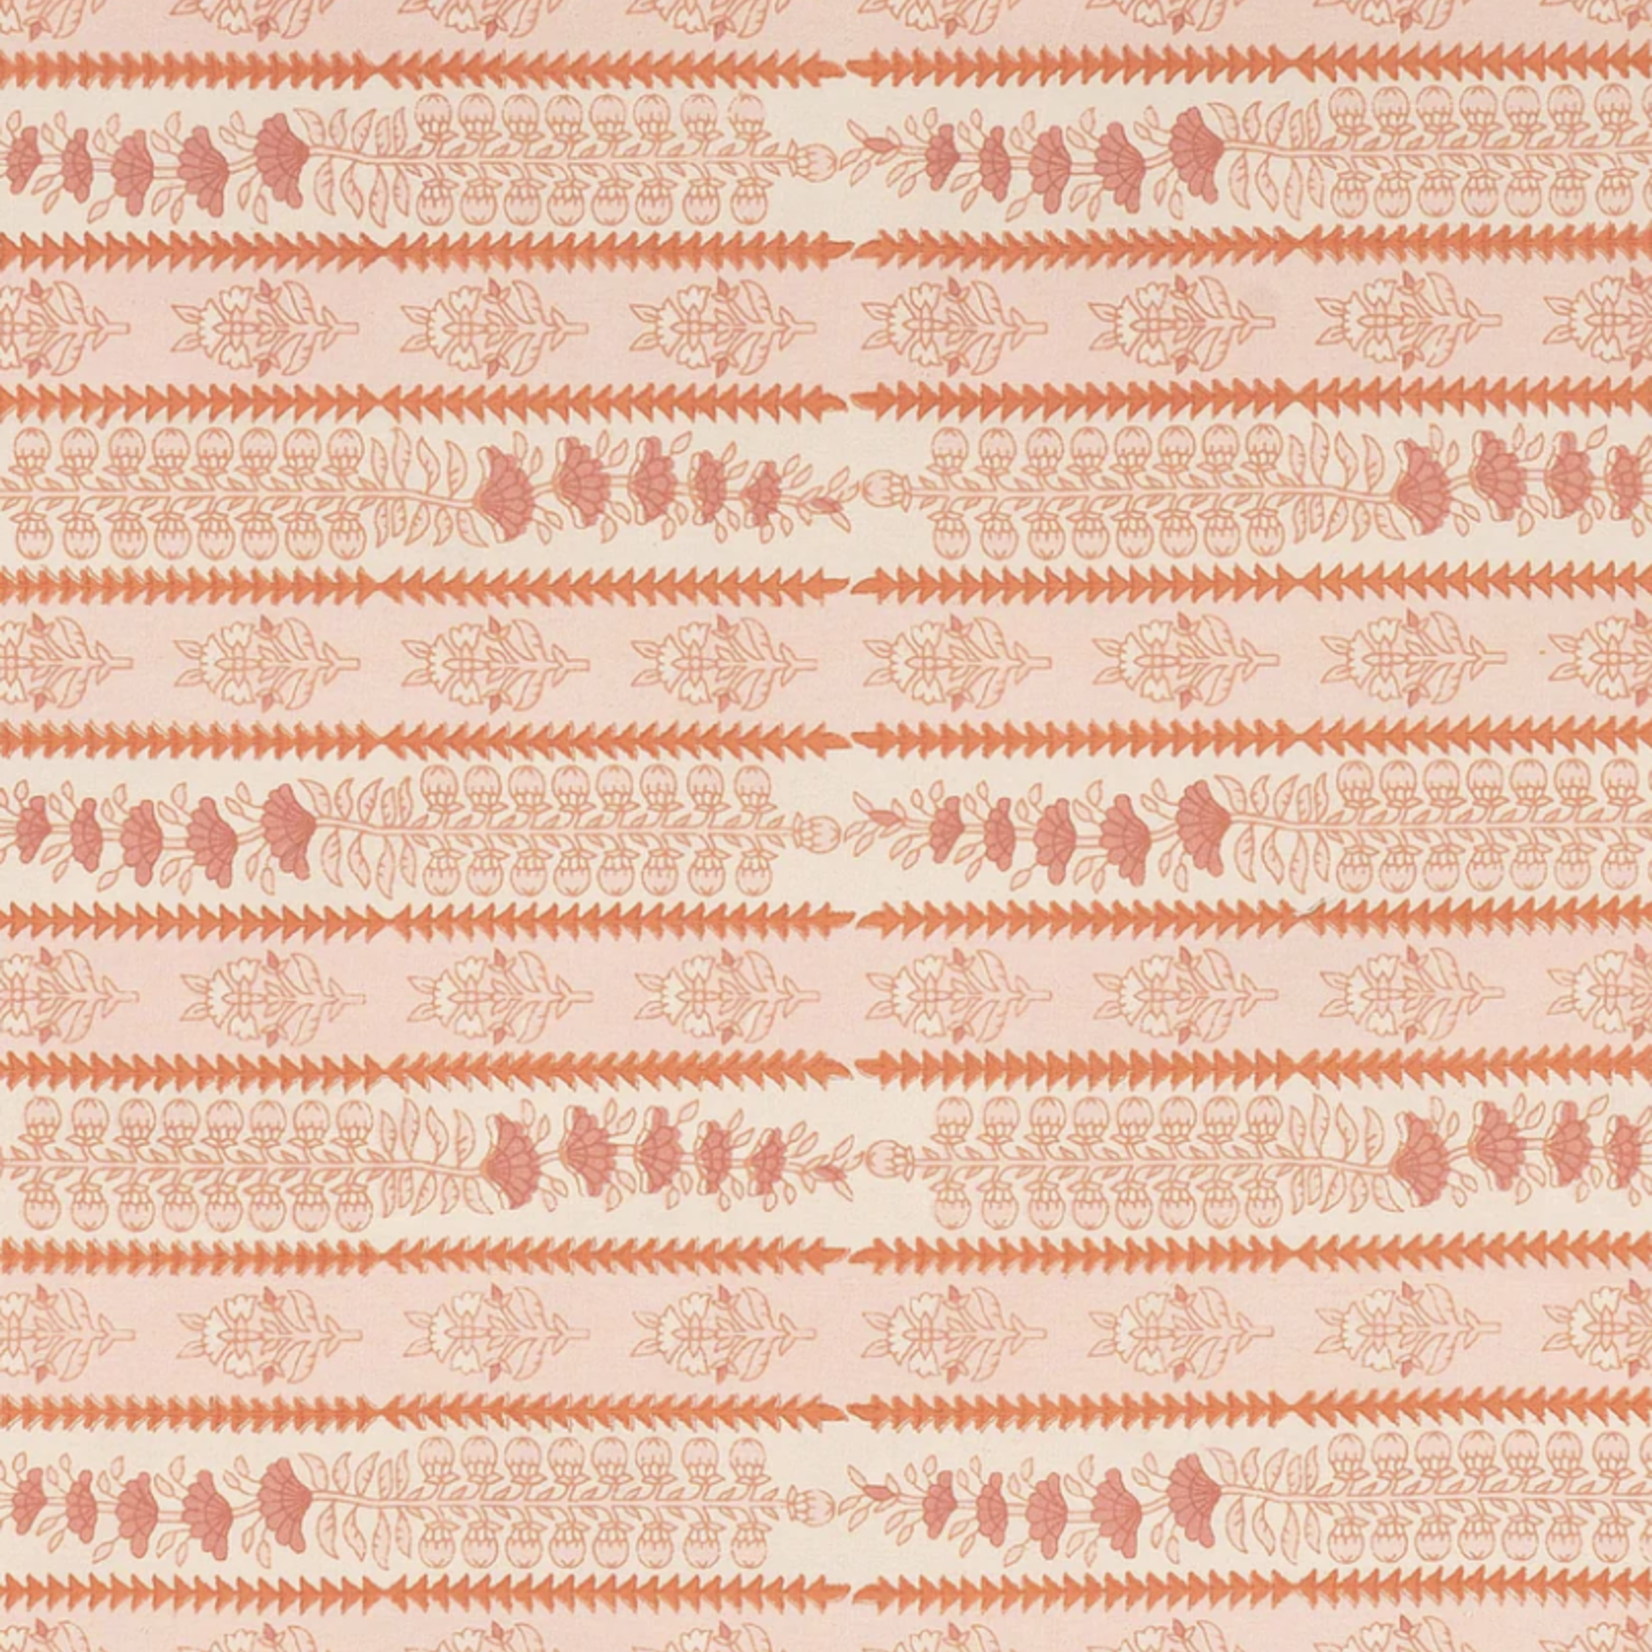 Avignon Pink City Rectangular Tablecloth, 71" x 142"